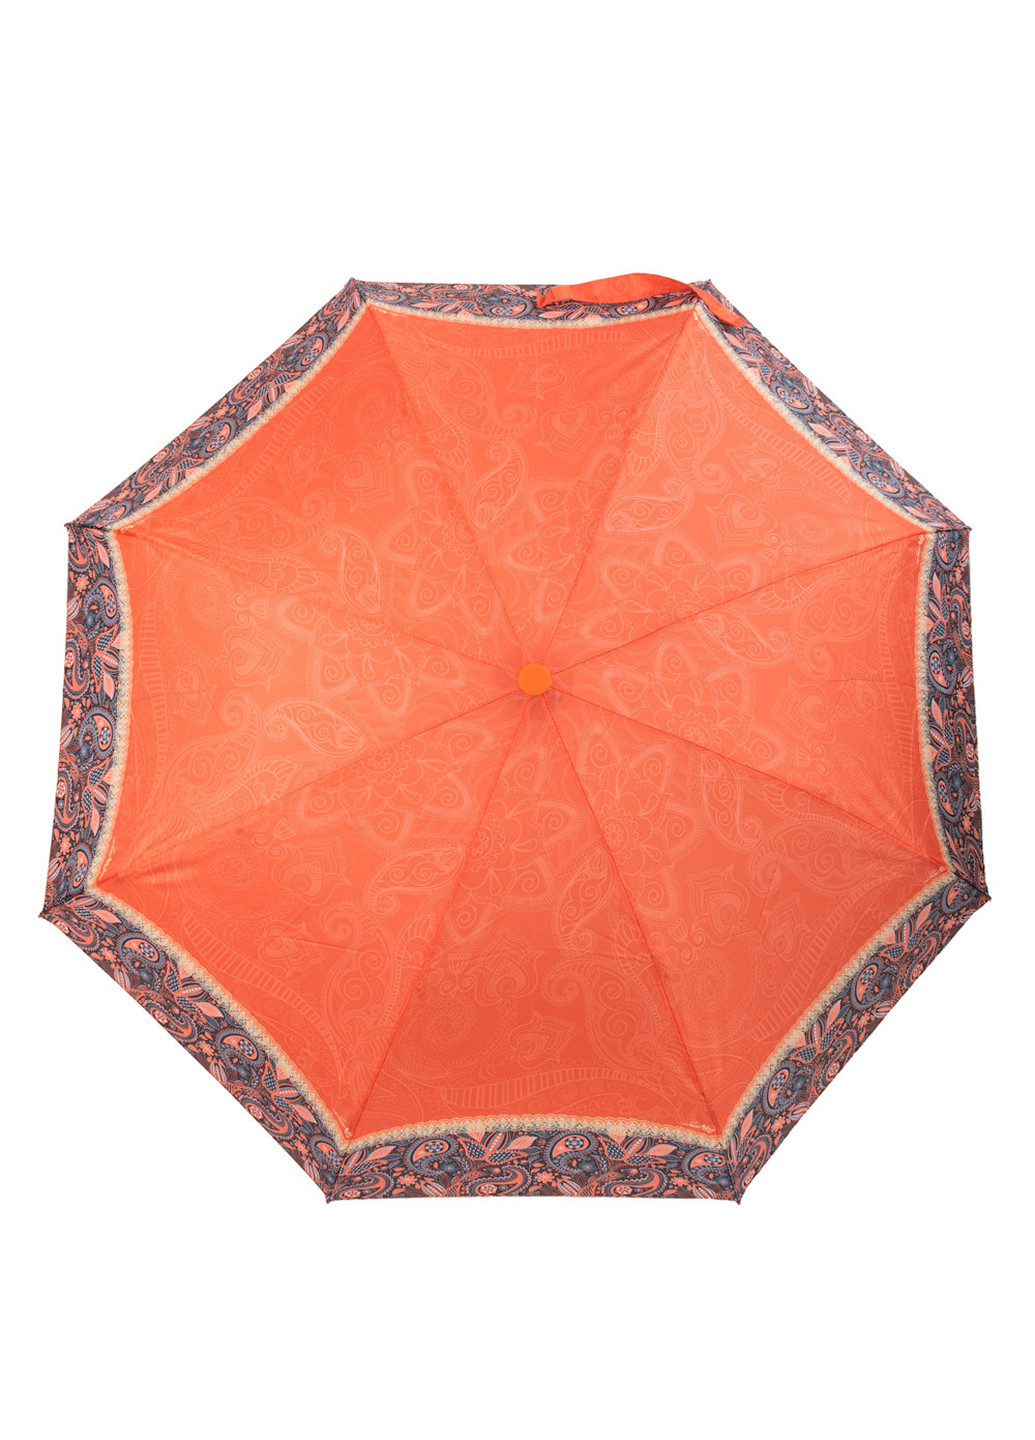 Женский складной зонт механический 105 см ArtRain (255710201)